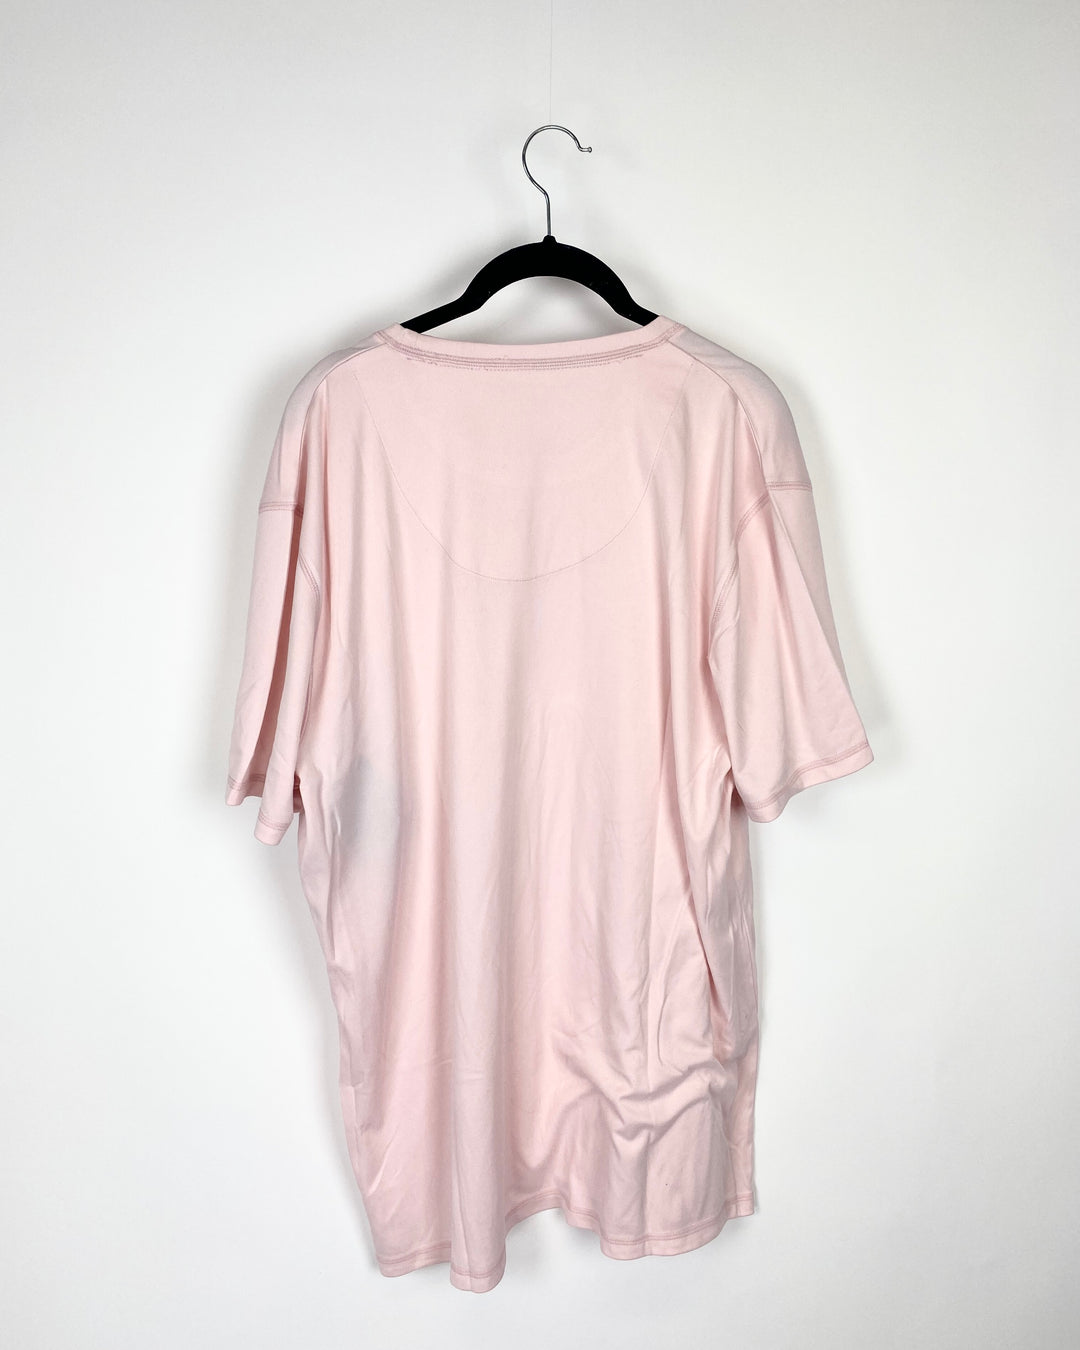 MENS Light Pink Short-Sleeved Shirt - Medium